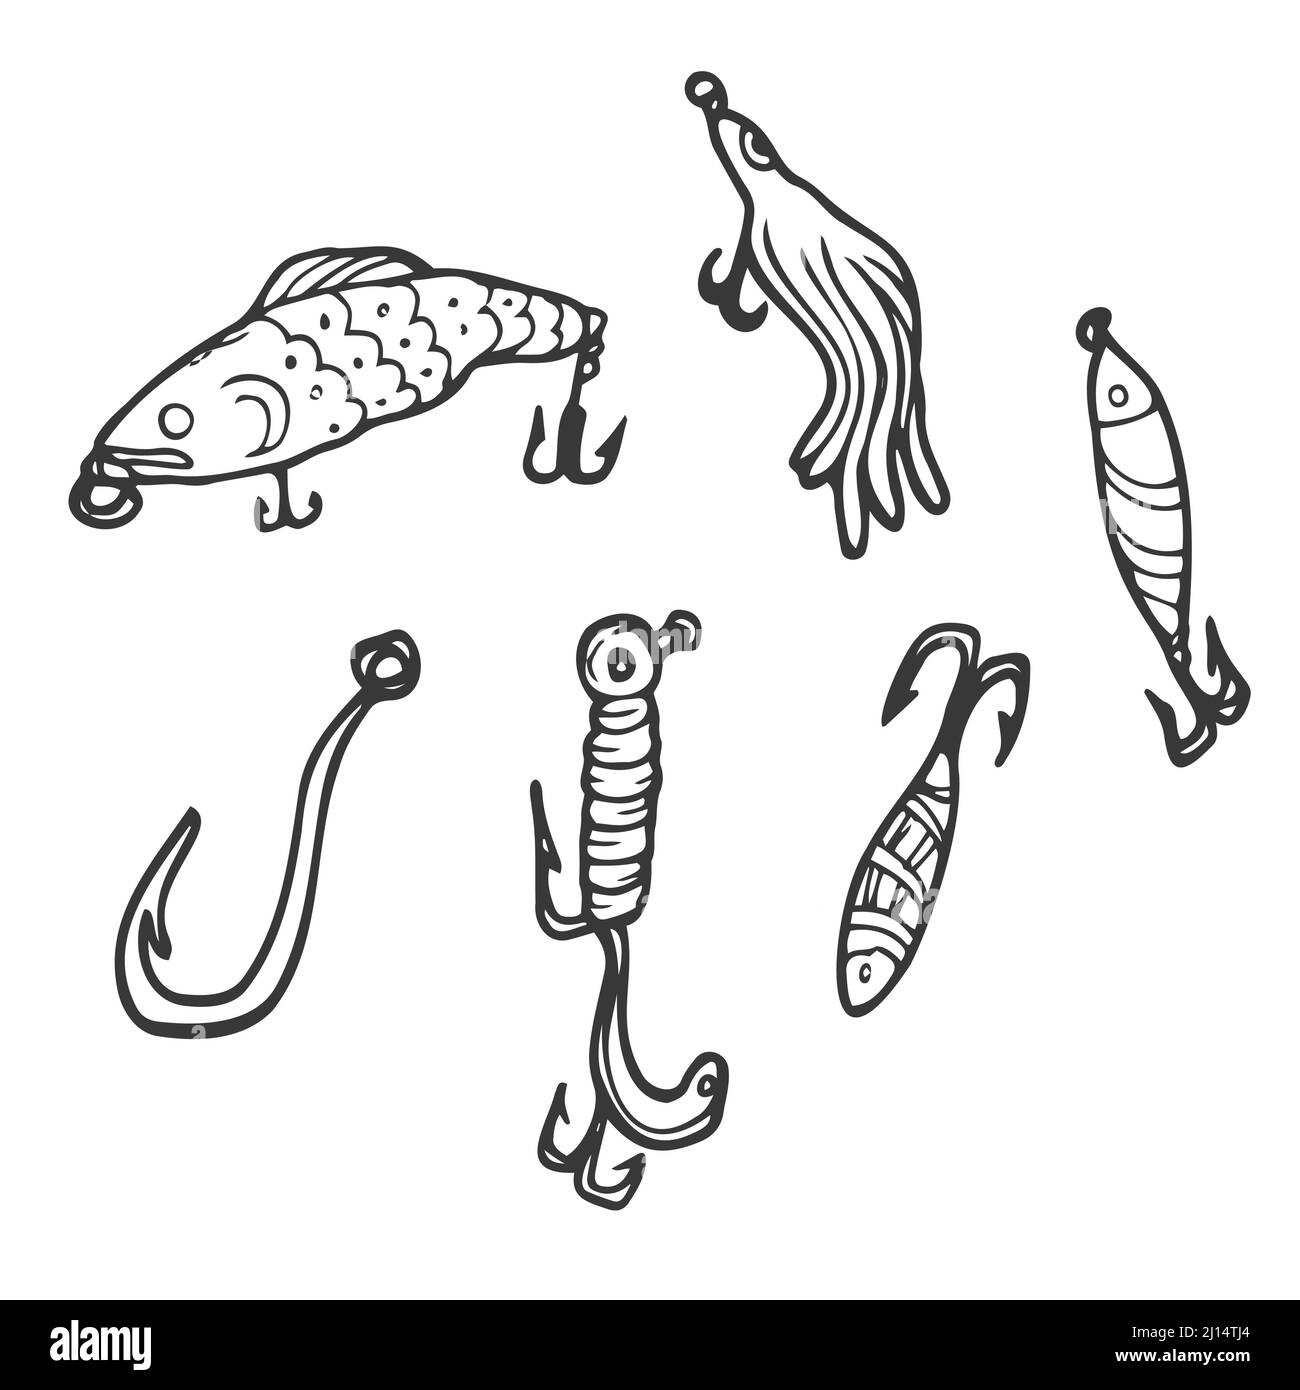 Köder zum Kritzeln angeln. Abstrakte zeitgenössische Fischköder in verschiedenen Größen und Formen für Angler. Farbige handgezeichnete Fischer Accessoires mit Haken. Stock Vektor